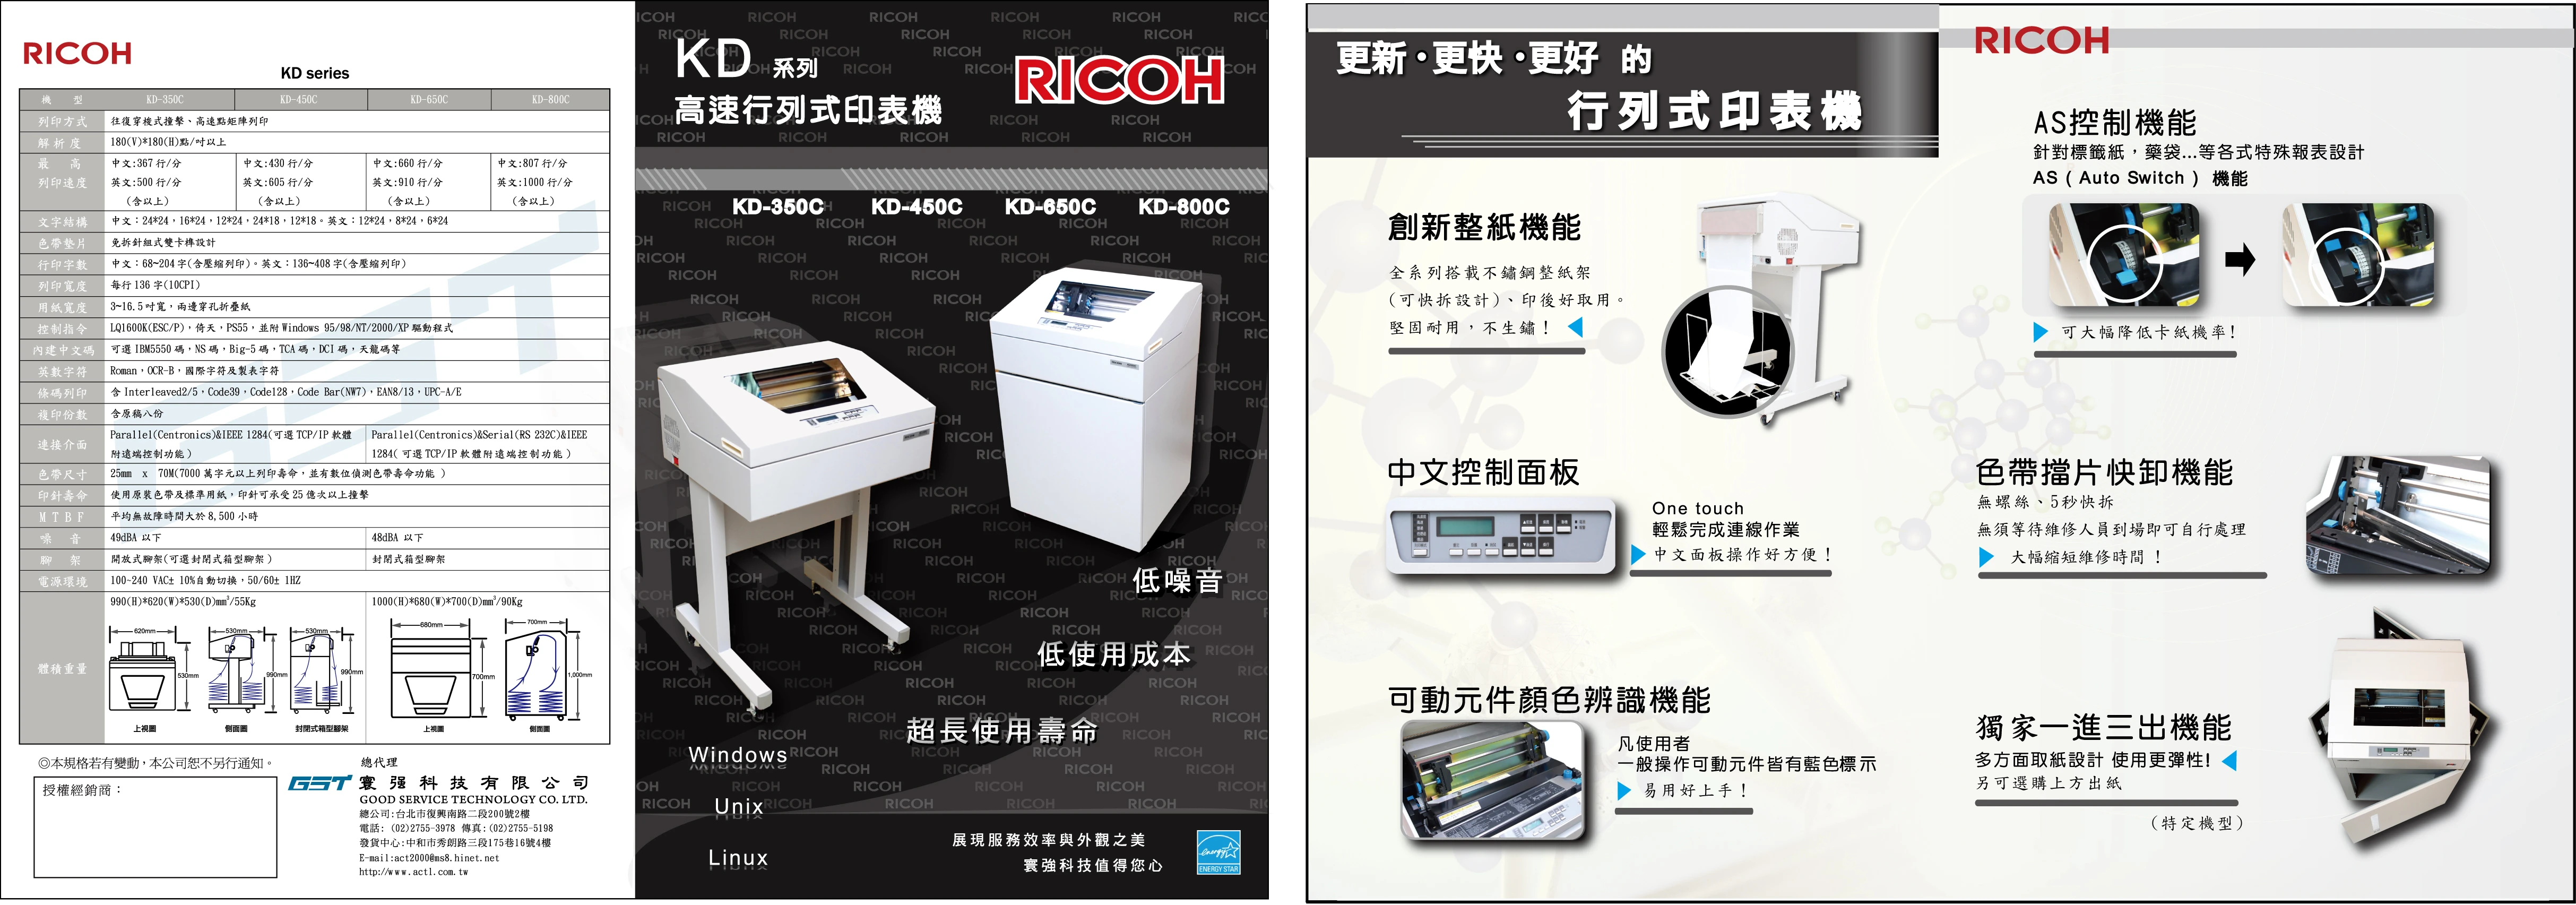 RICOH KD系列行列式印表機